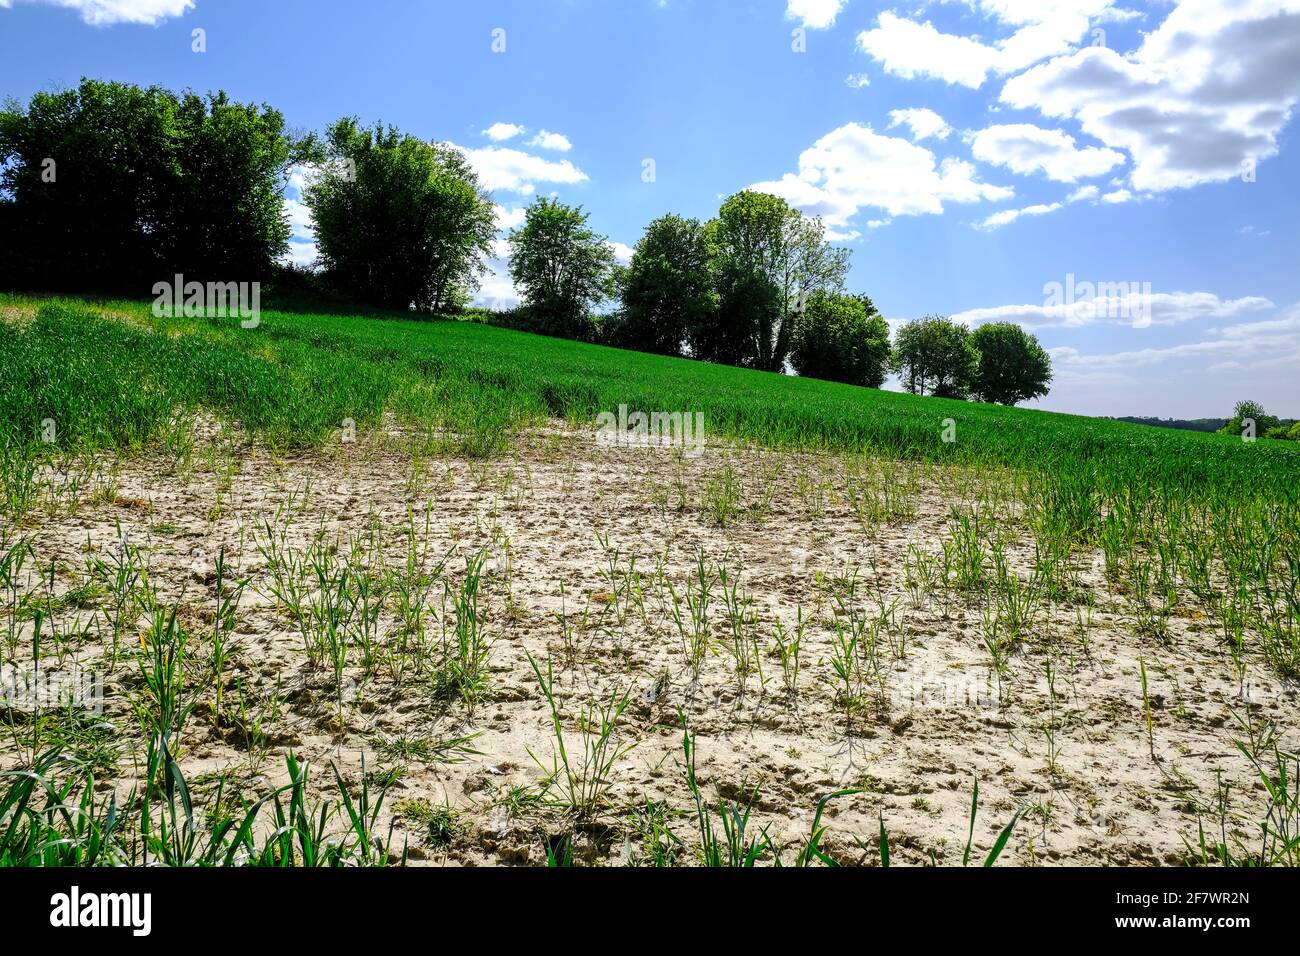 11.05.2020, Essen, Ruhrgebiet, Nordrhein-Westfalen, Deutschland - Trockenheit fuehrt zu einem kuemmerlichen Wachstum auf einem Getreidefeld an einem H Stock Photo